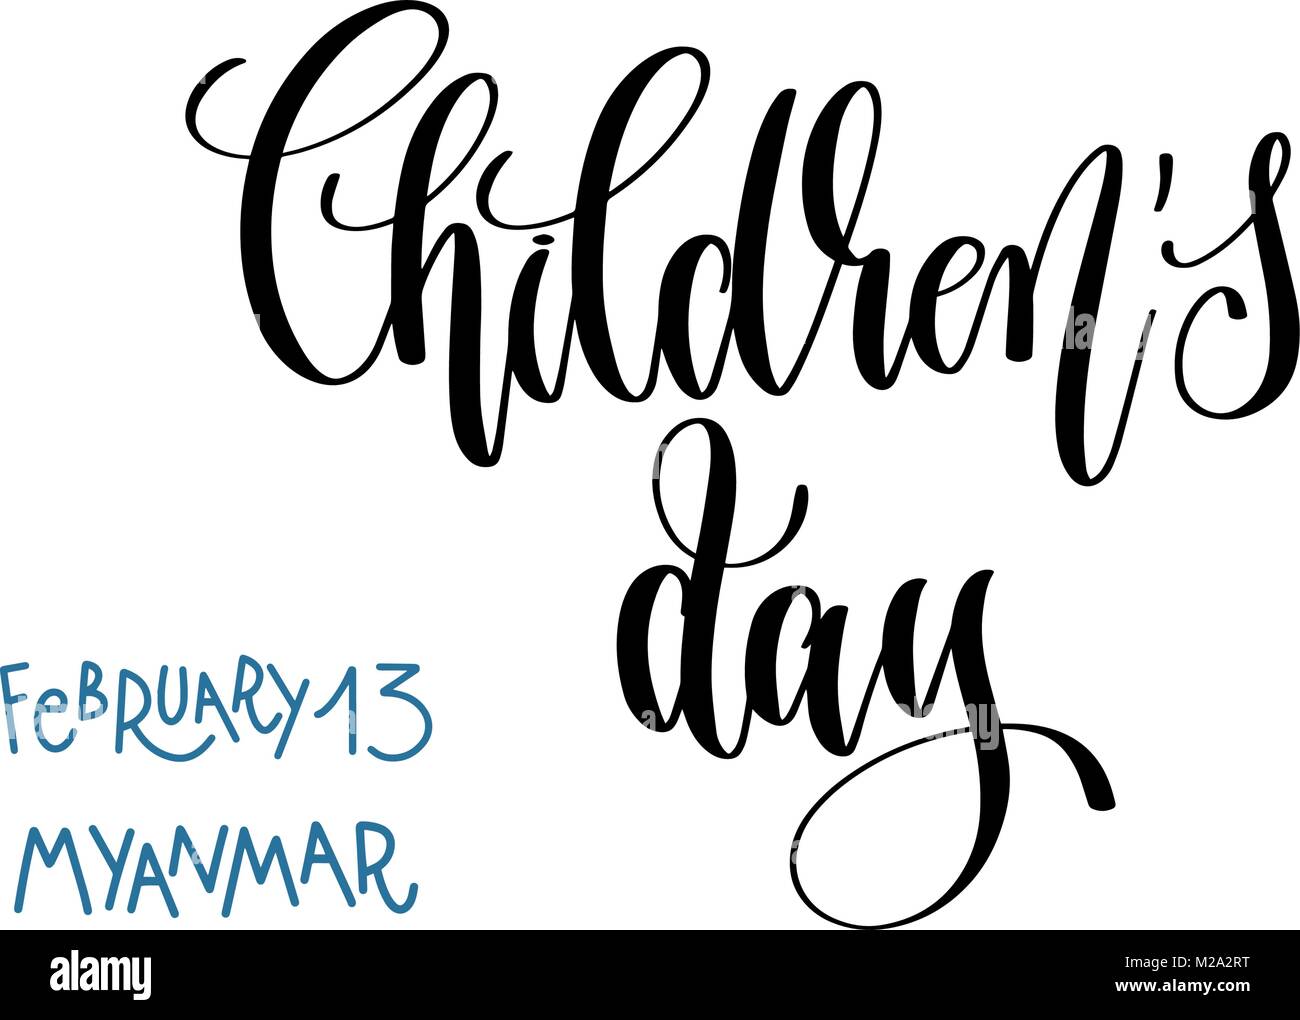 february 13 - children's day - myanmar, hand lettering Stock Vector